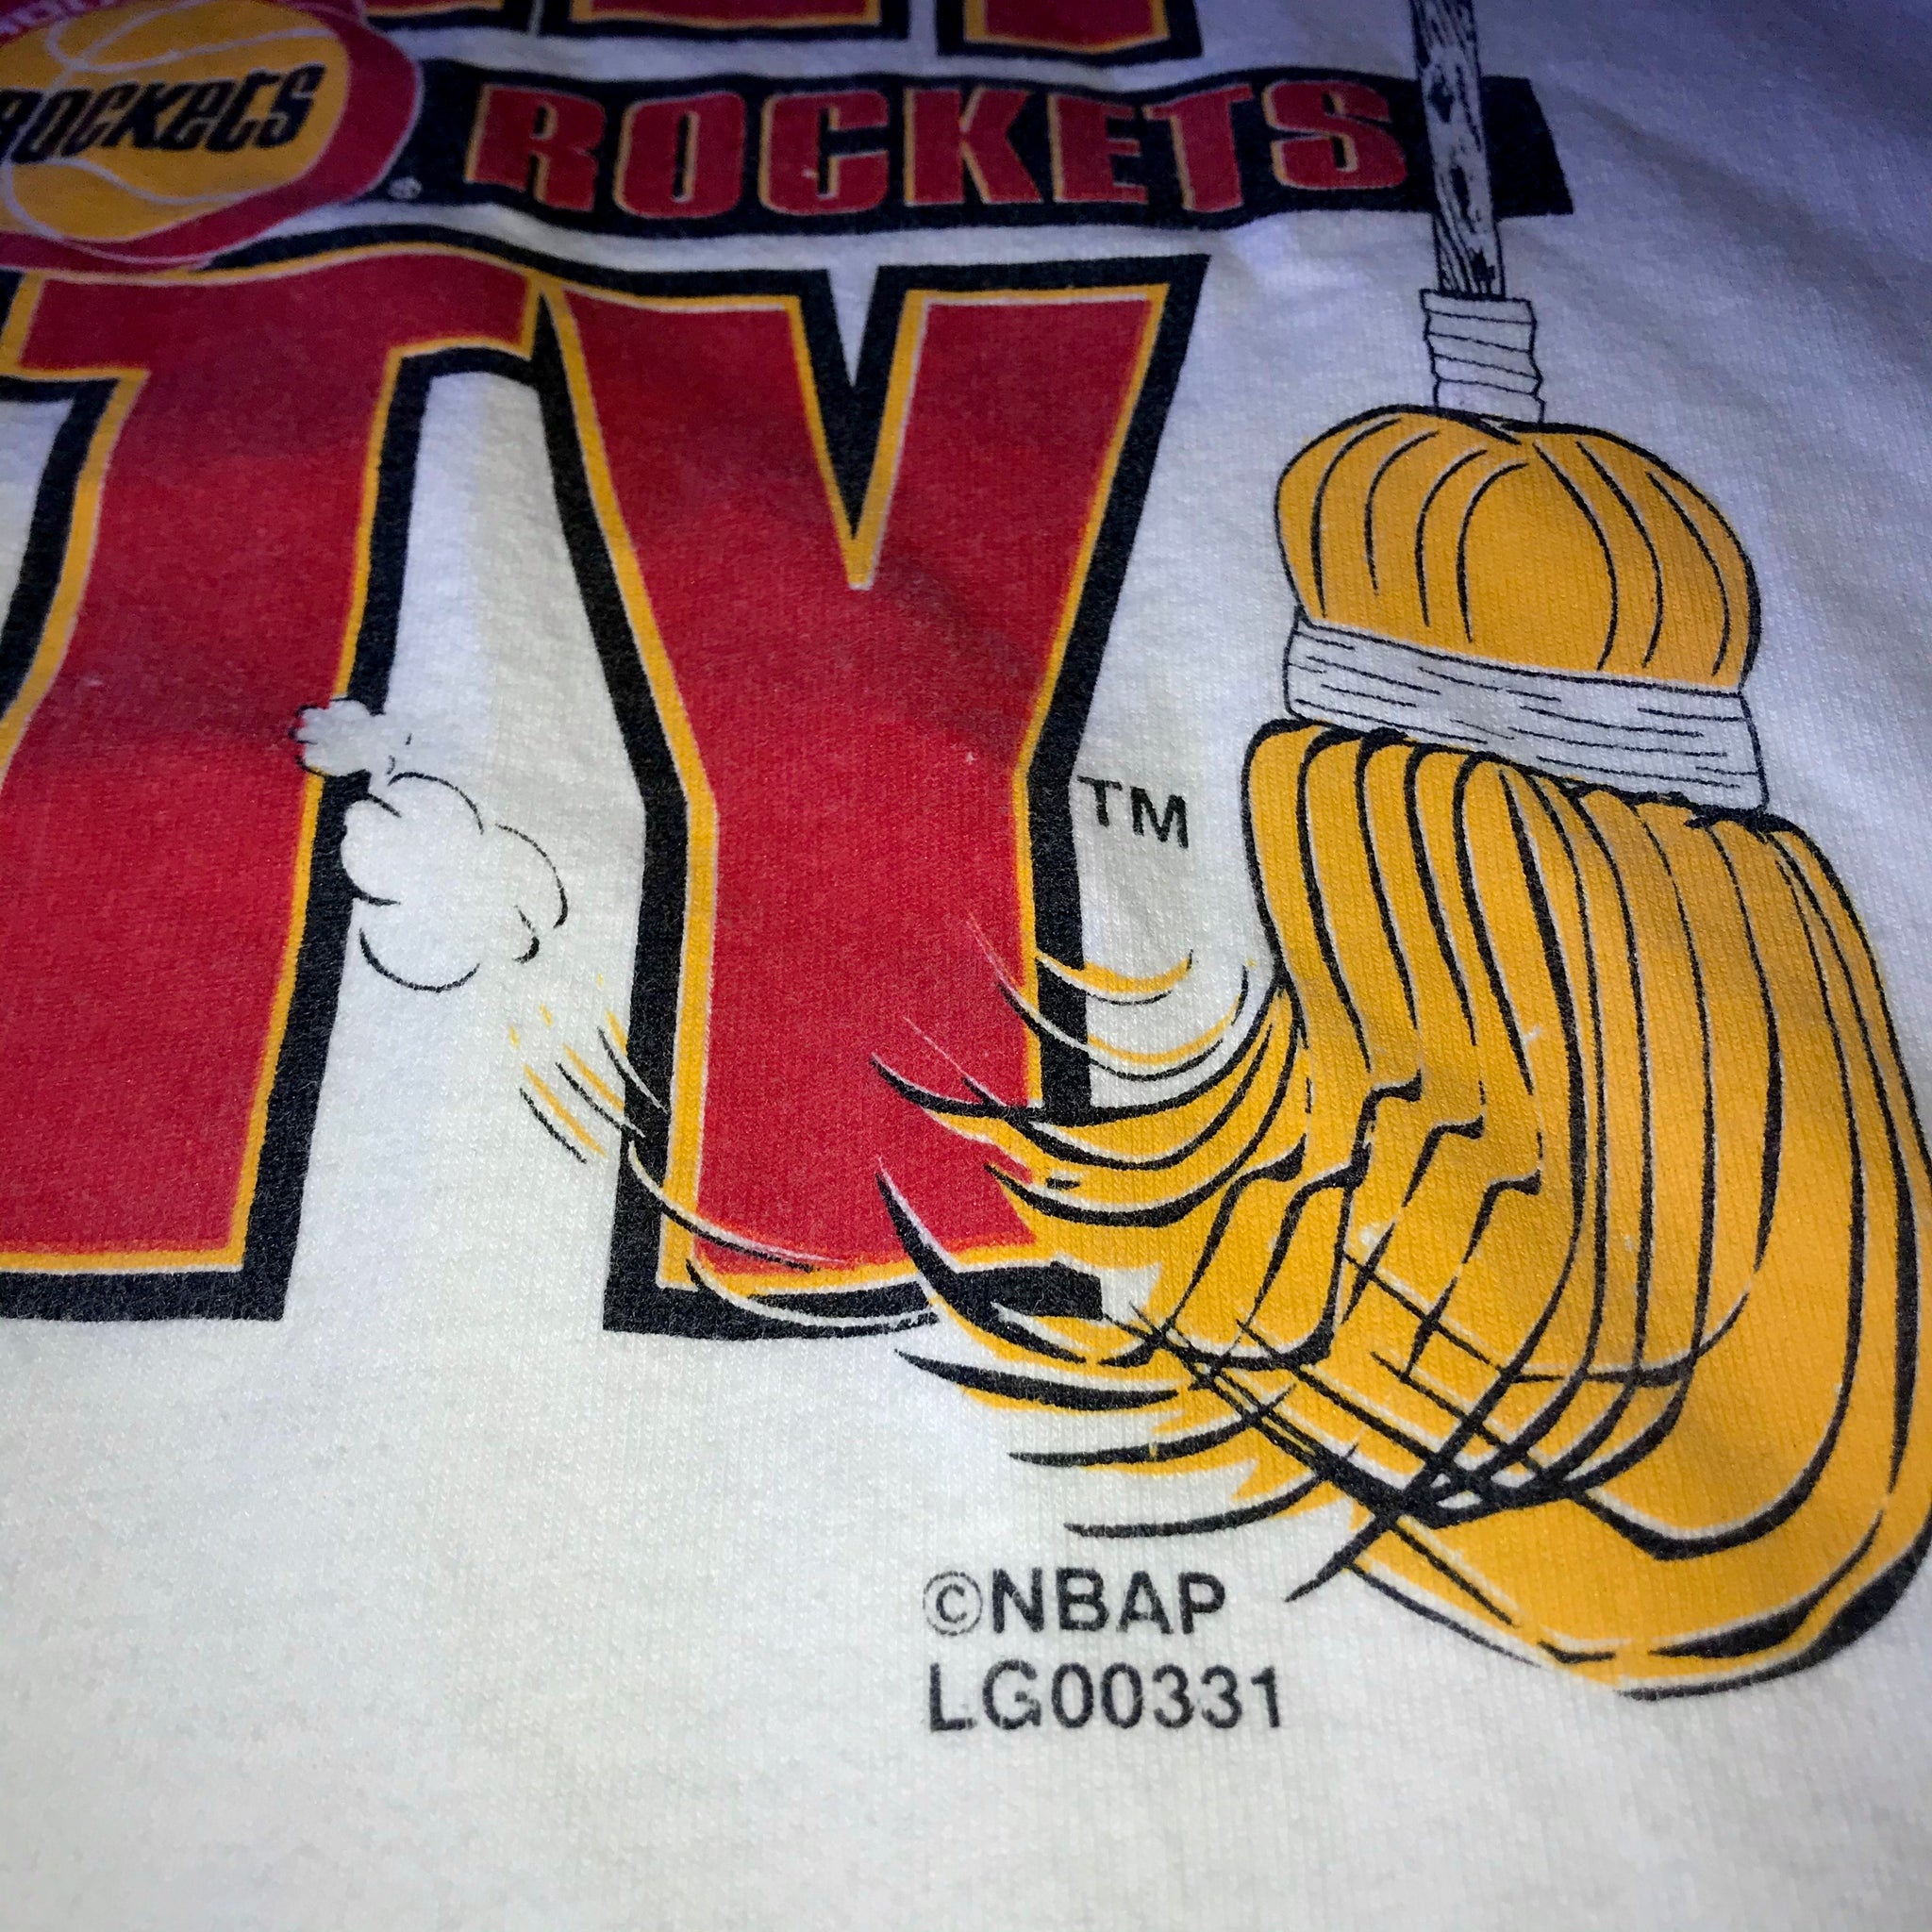 Houston Rockets 1995 World Champions T-Shirt